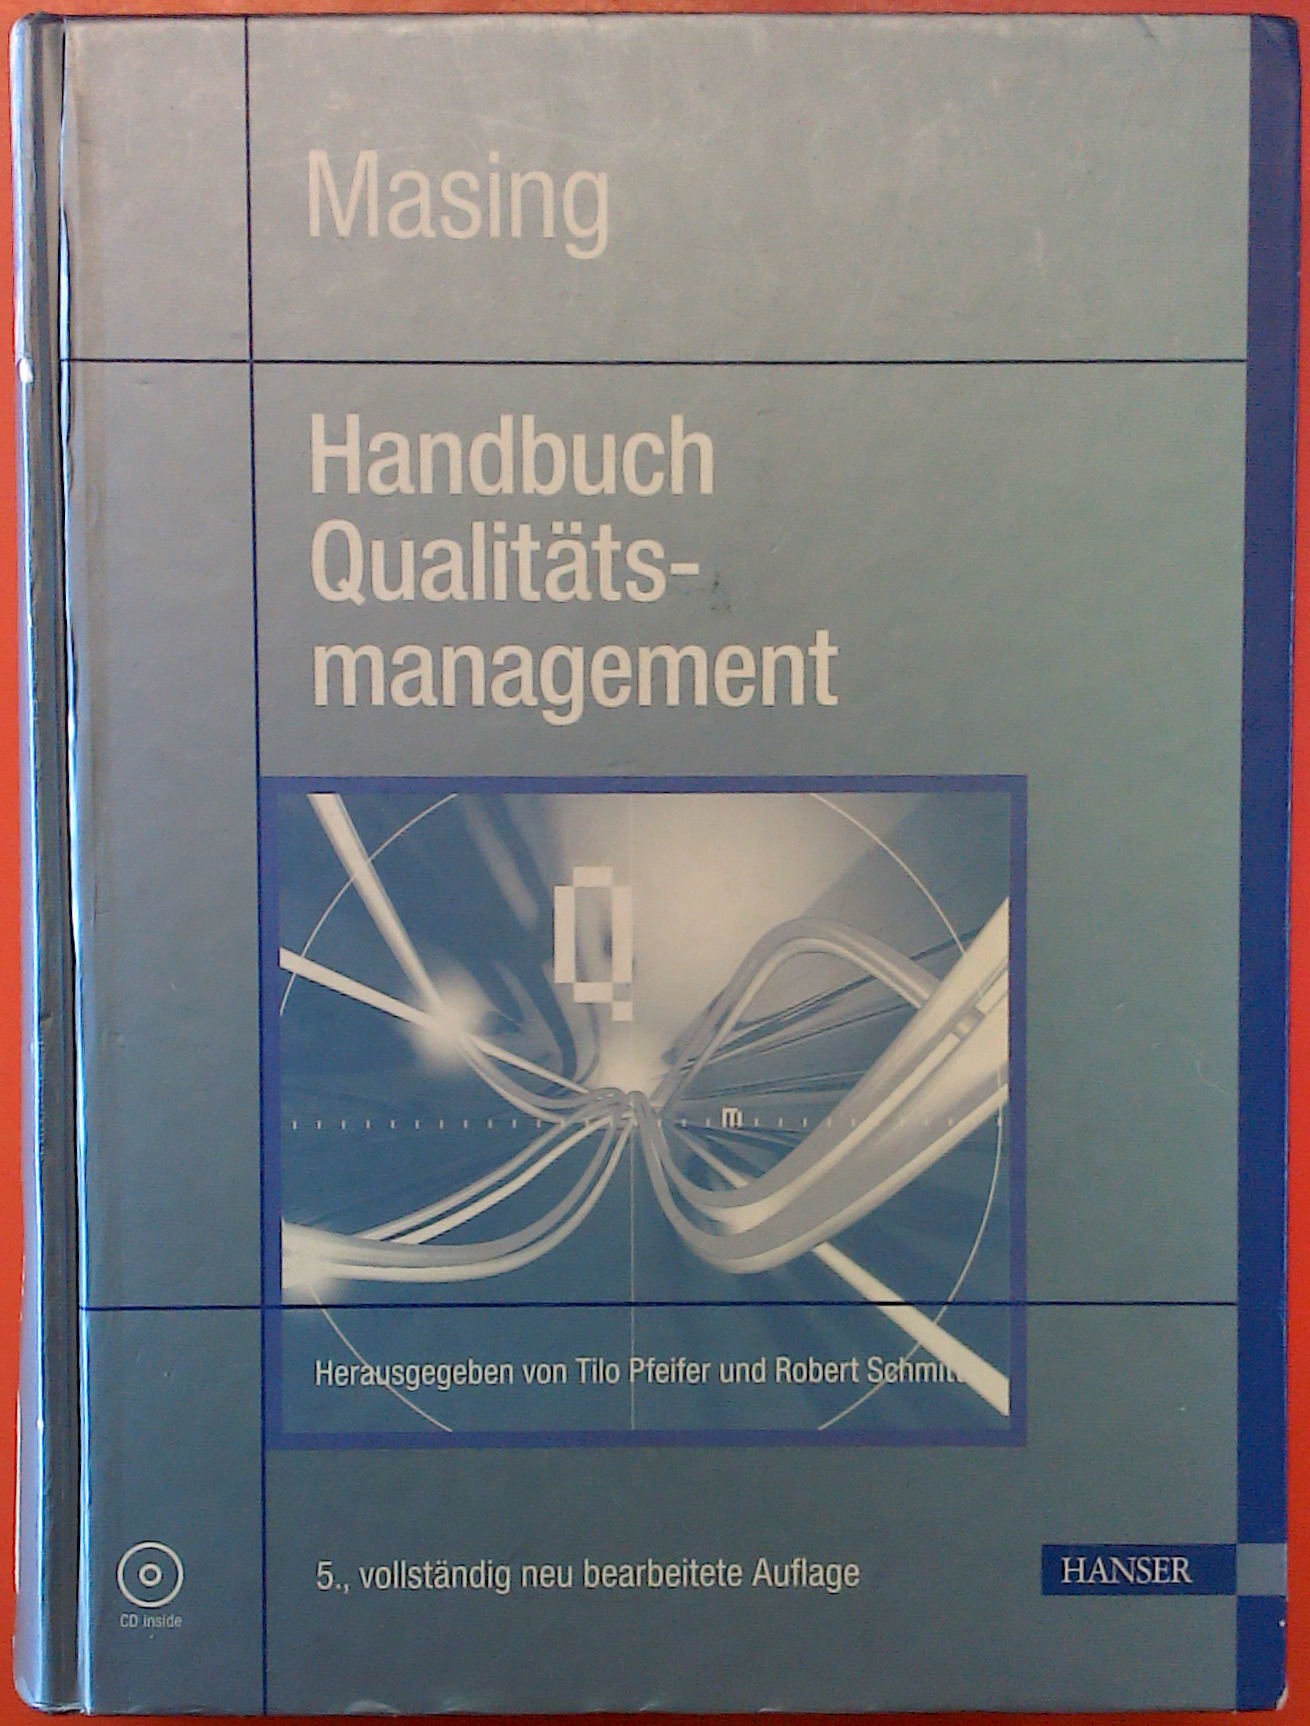 Handbuch Qualitätsmanagement, Masing - Pfeifer/Schmitt